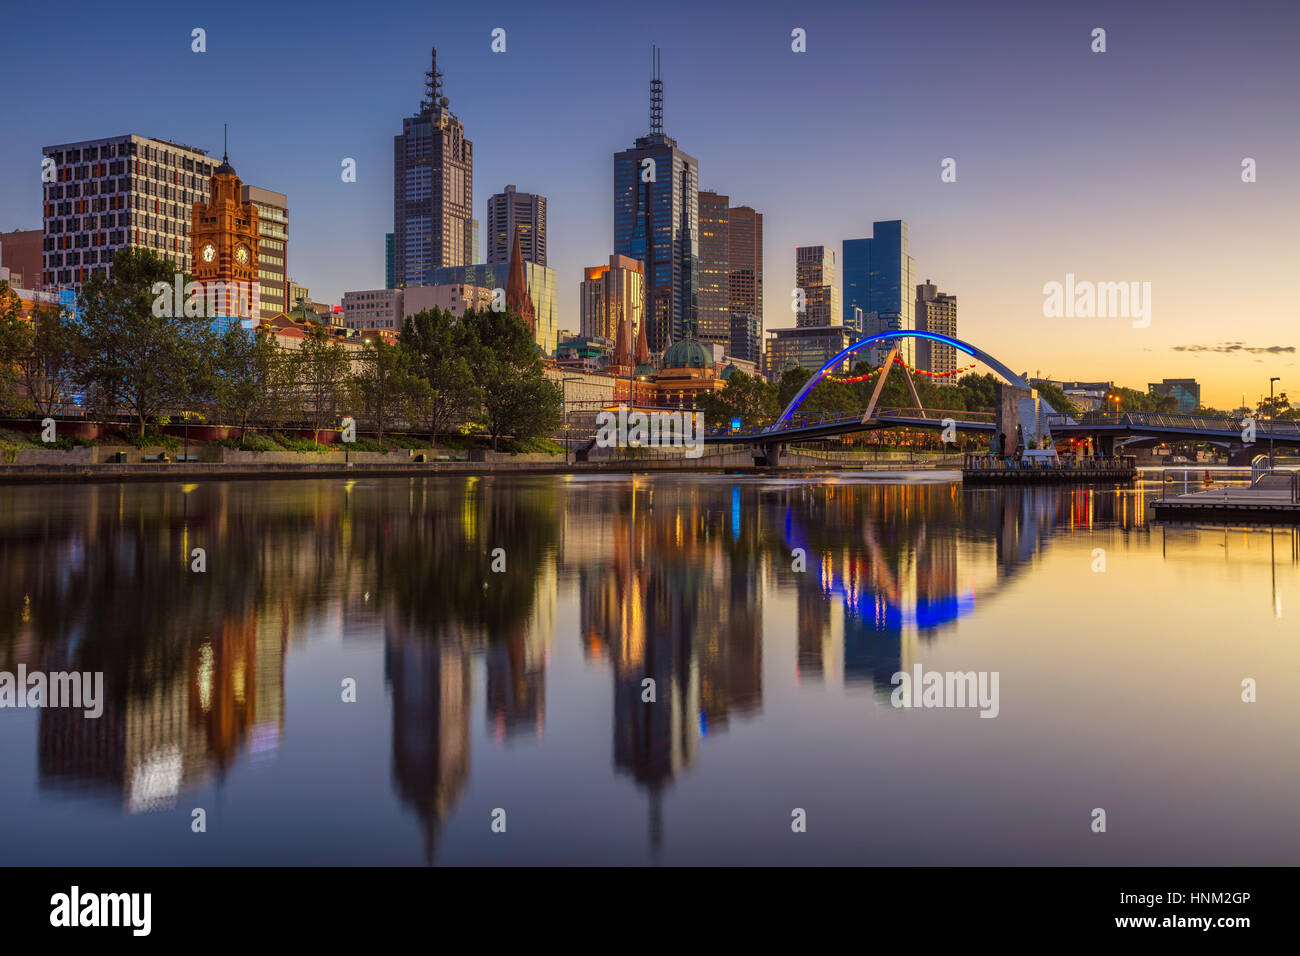 Città di Melbourne. Immagine di paesaggio cittadino di Melbourne, Australia durante il periodo estivo sunrise. Foto Stock